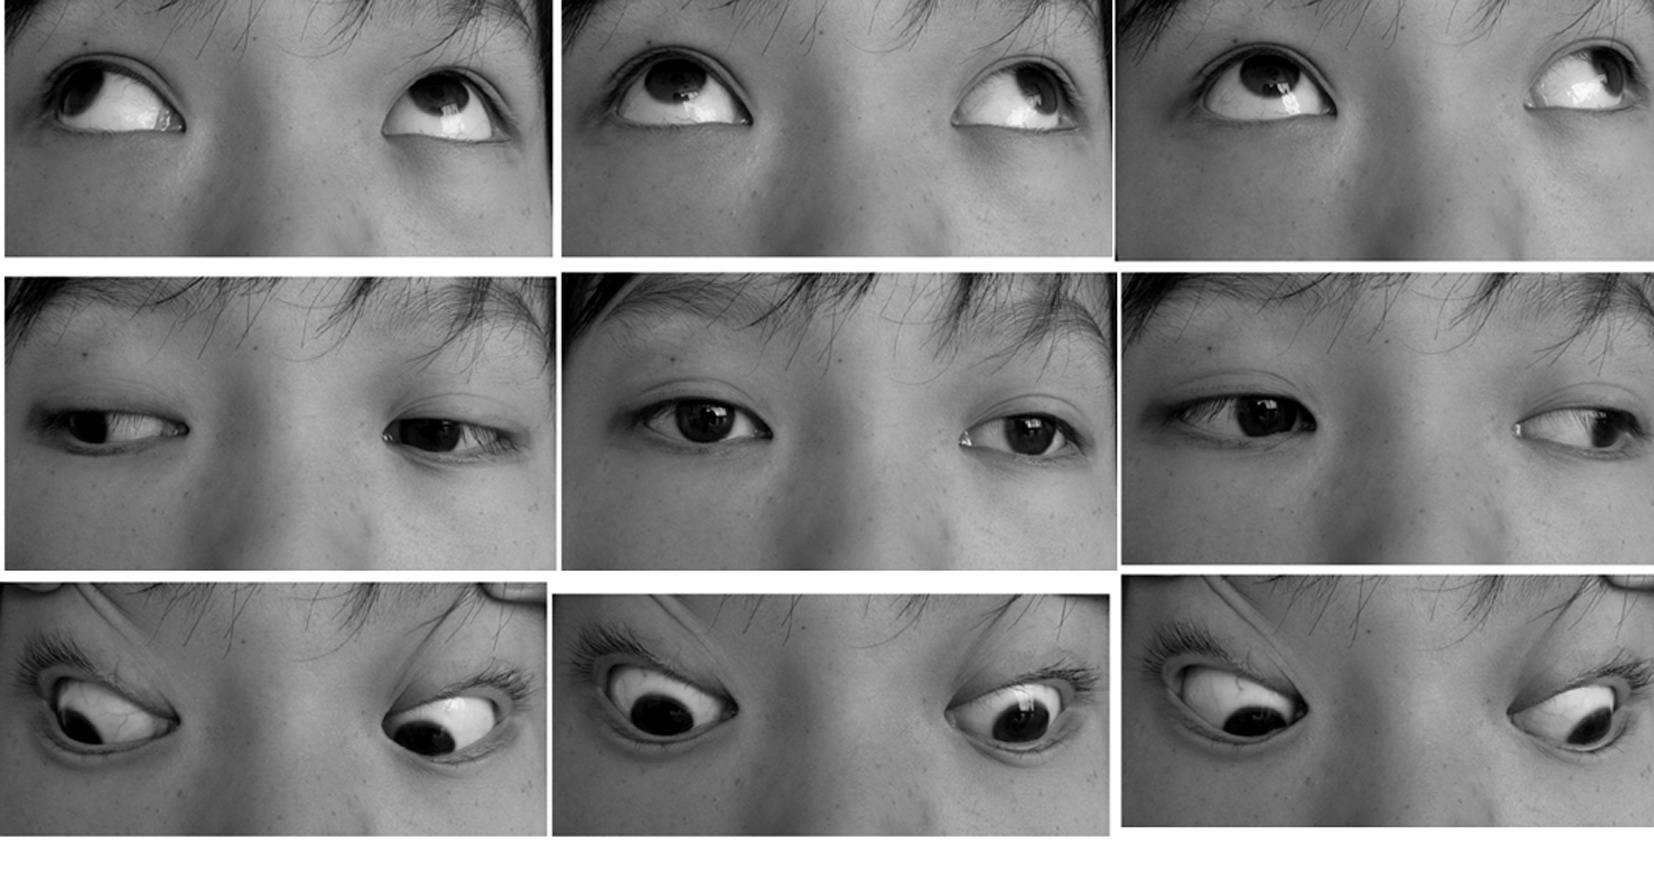 时,另一只眼出现偏斜;眼球转动时可出现不同程度受限或正常;复视现象